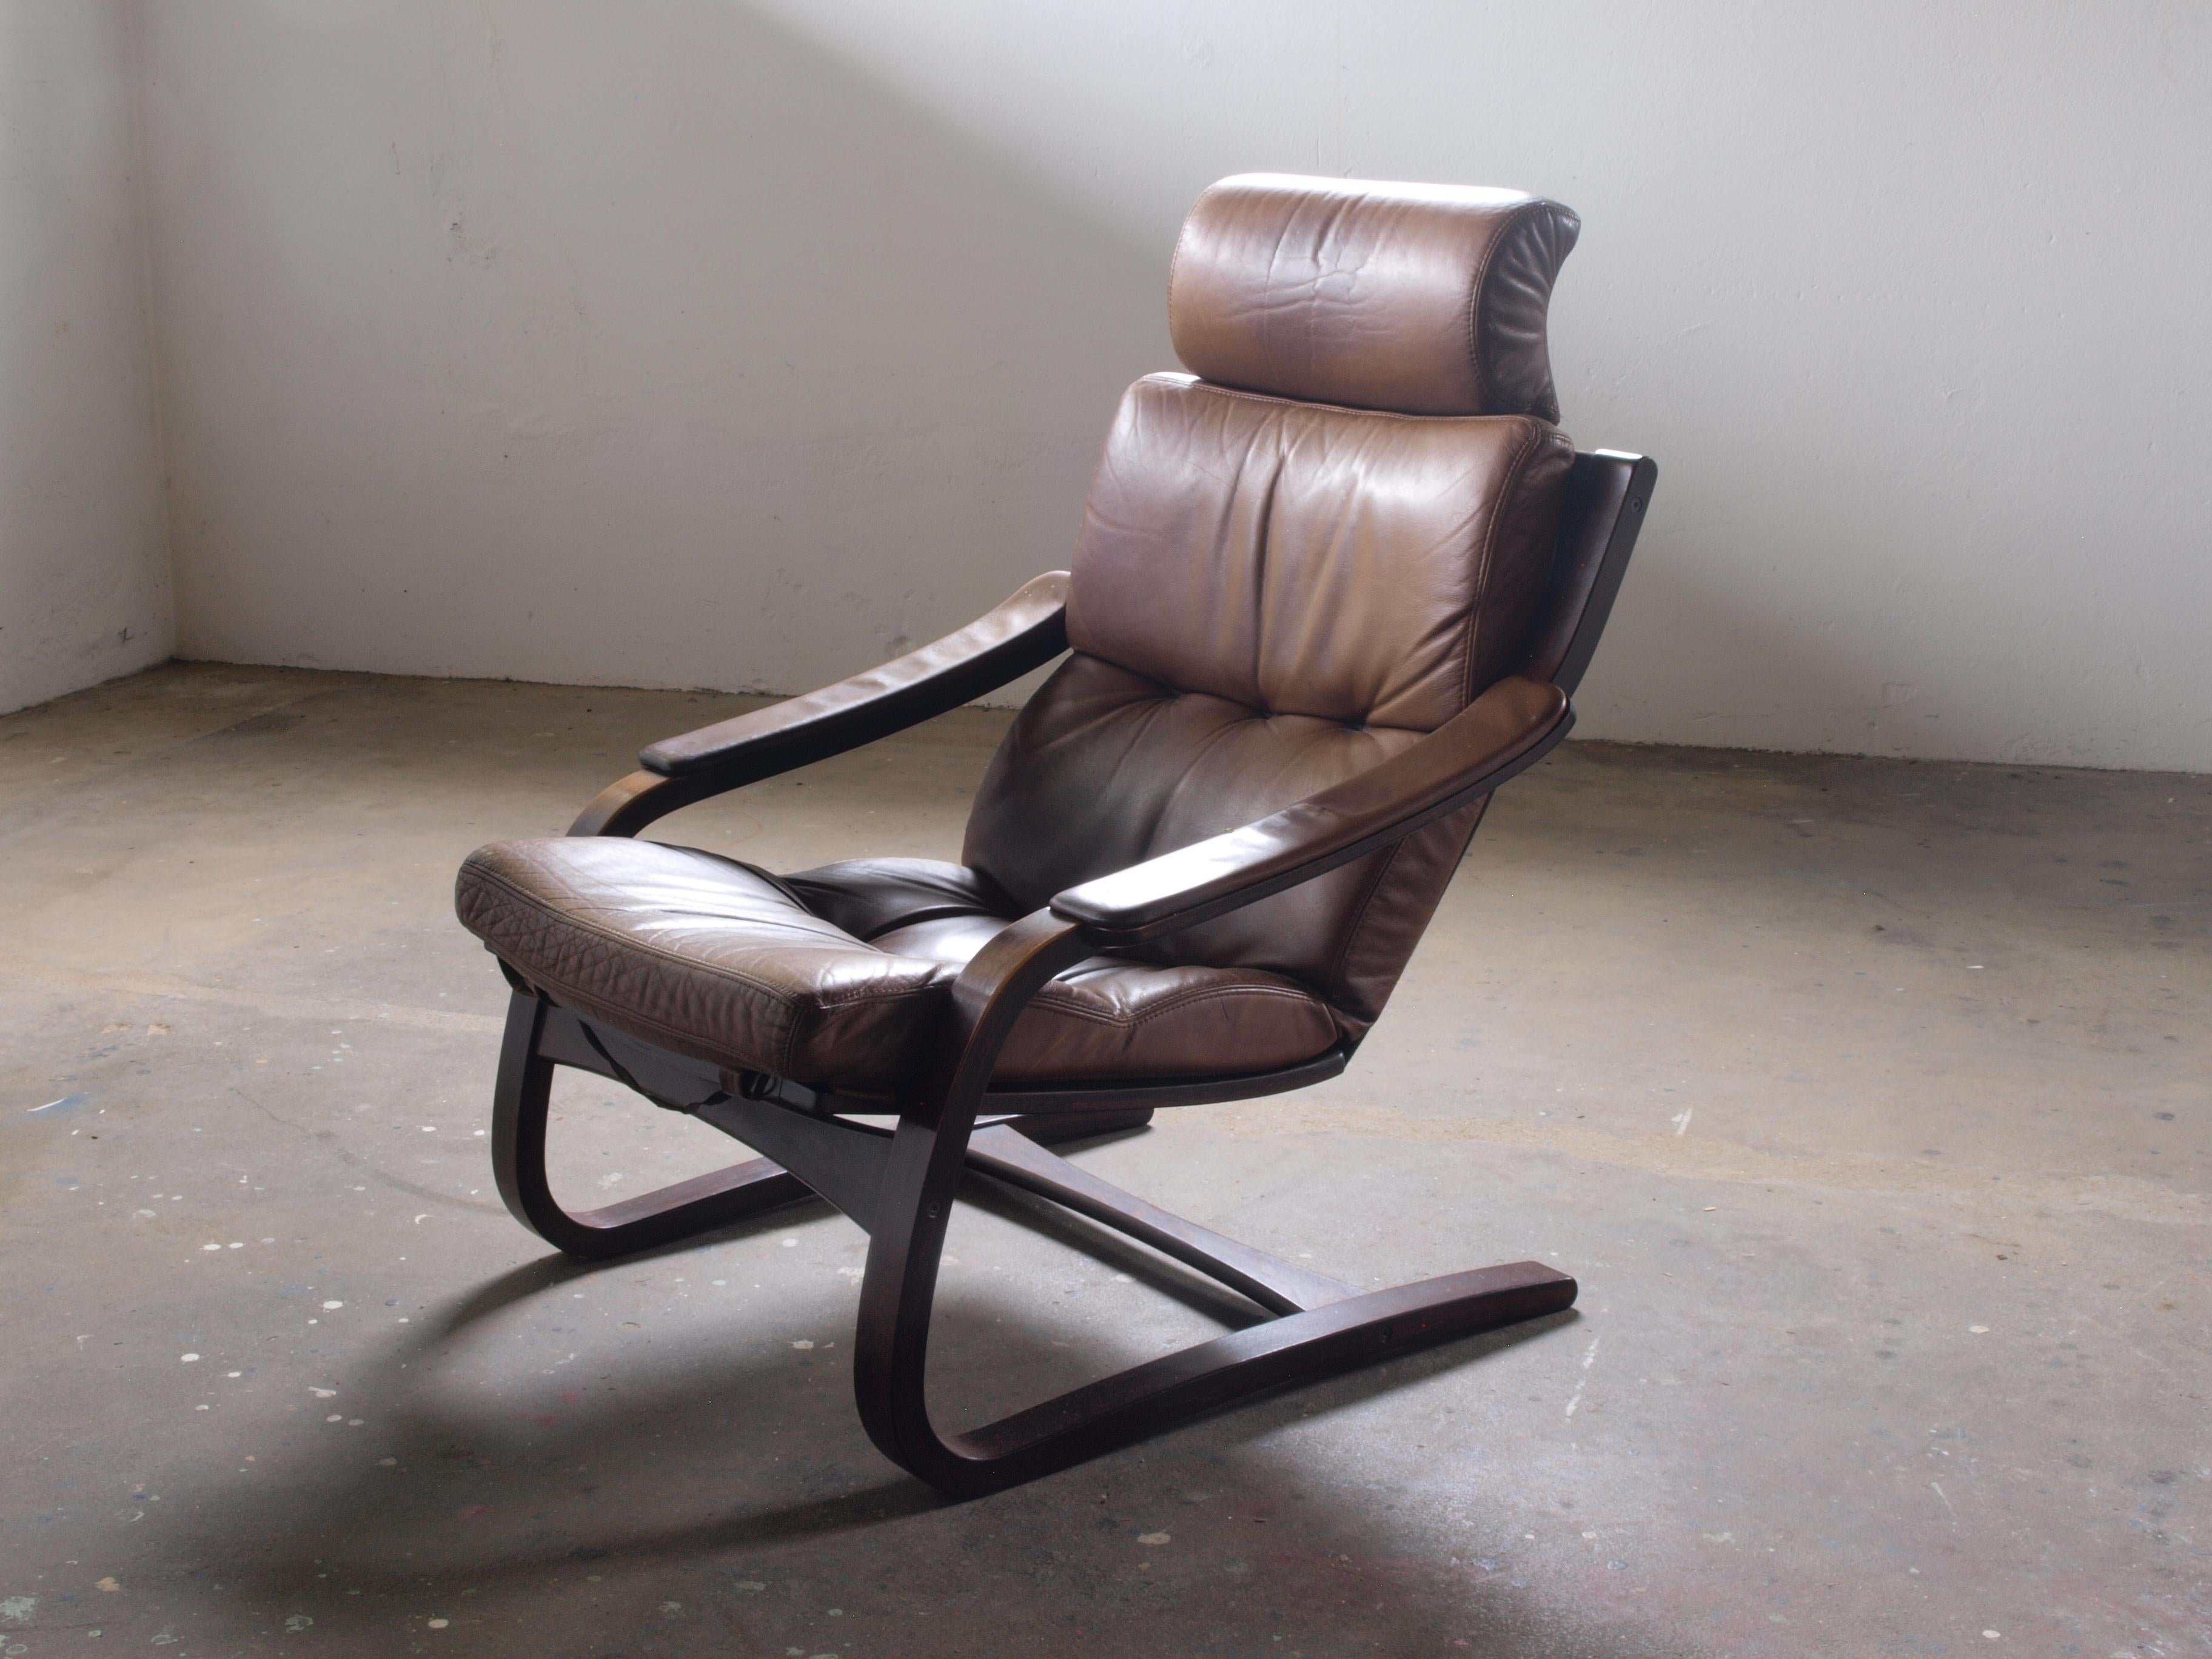 A vendre, un fauteuil vintage Åke Fribytter du fabricant suédois Nelo. Ce magnifique fauteuil est fabriqué en bois de hêtre courbé et revêtu d'un cuir robuste, solide et épais. Il exhale le charme des années 1970, offrant une esthétique brute et